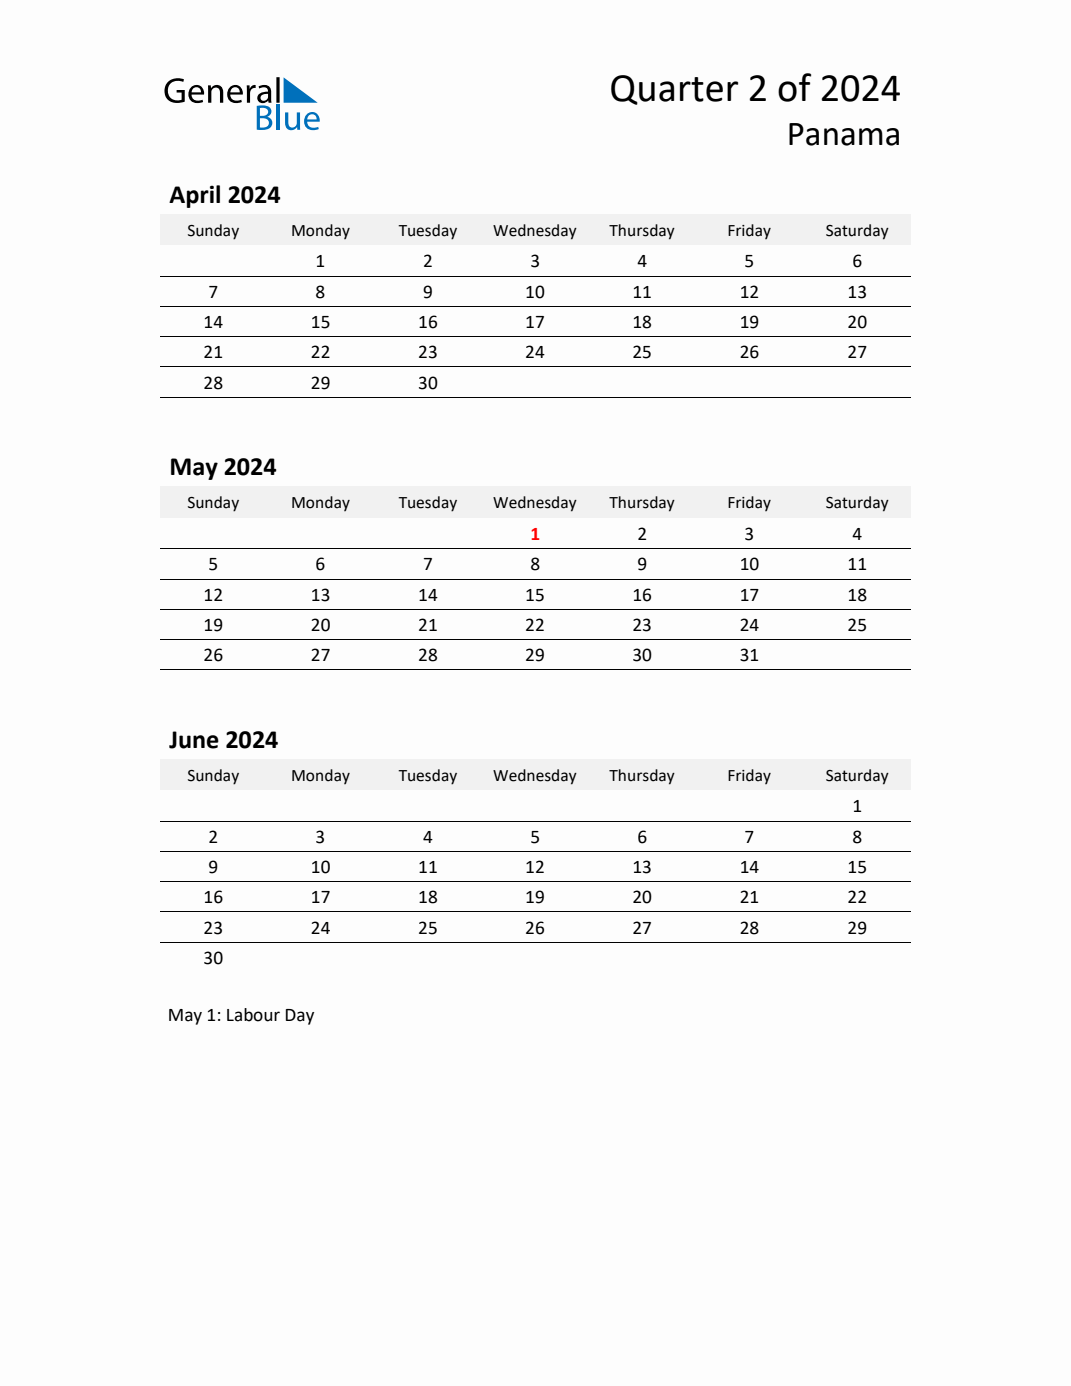 Q2 2024 Quarterly Calendar with Panama Holidays